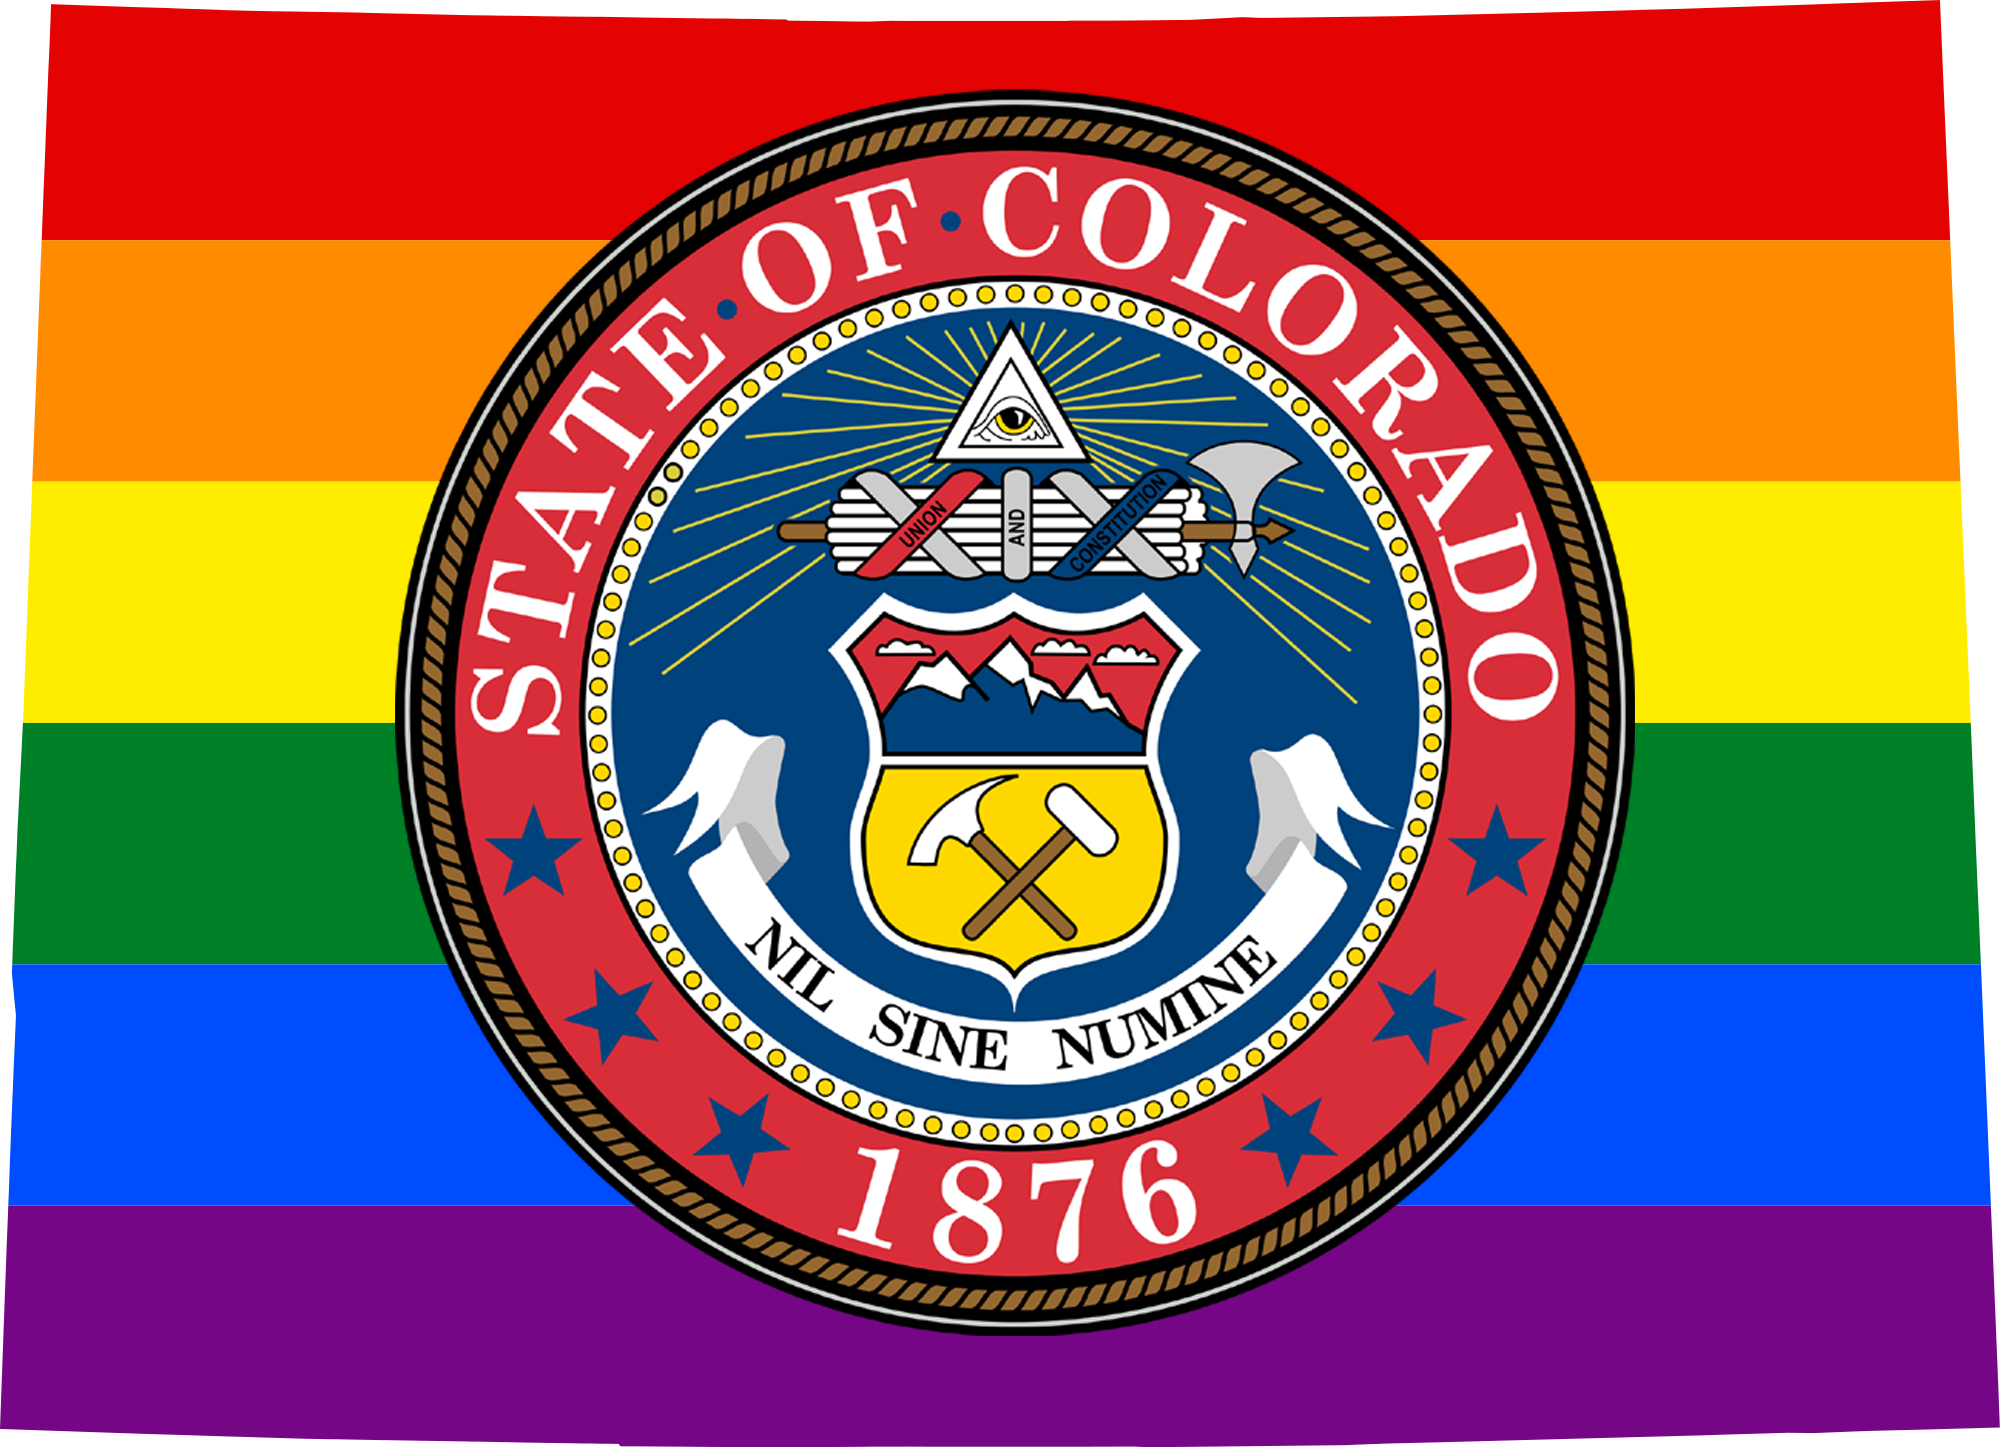 Colorado LGBTQ